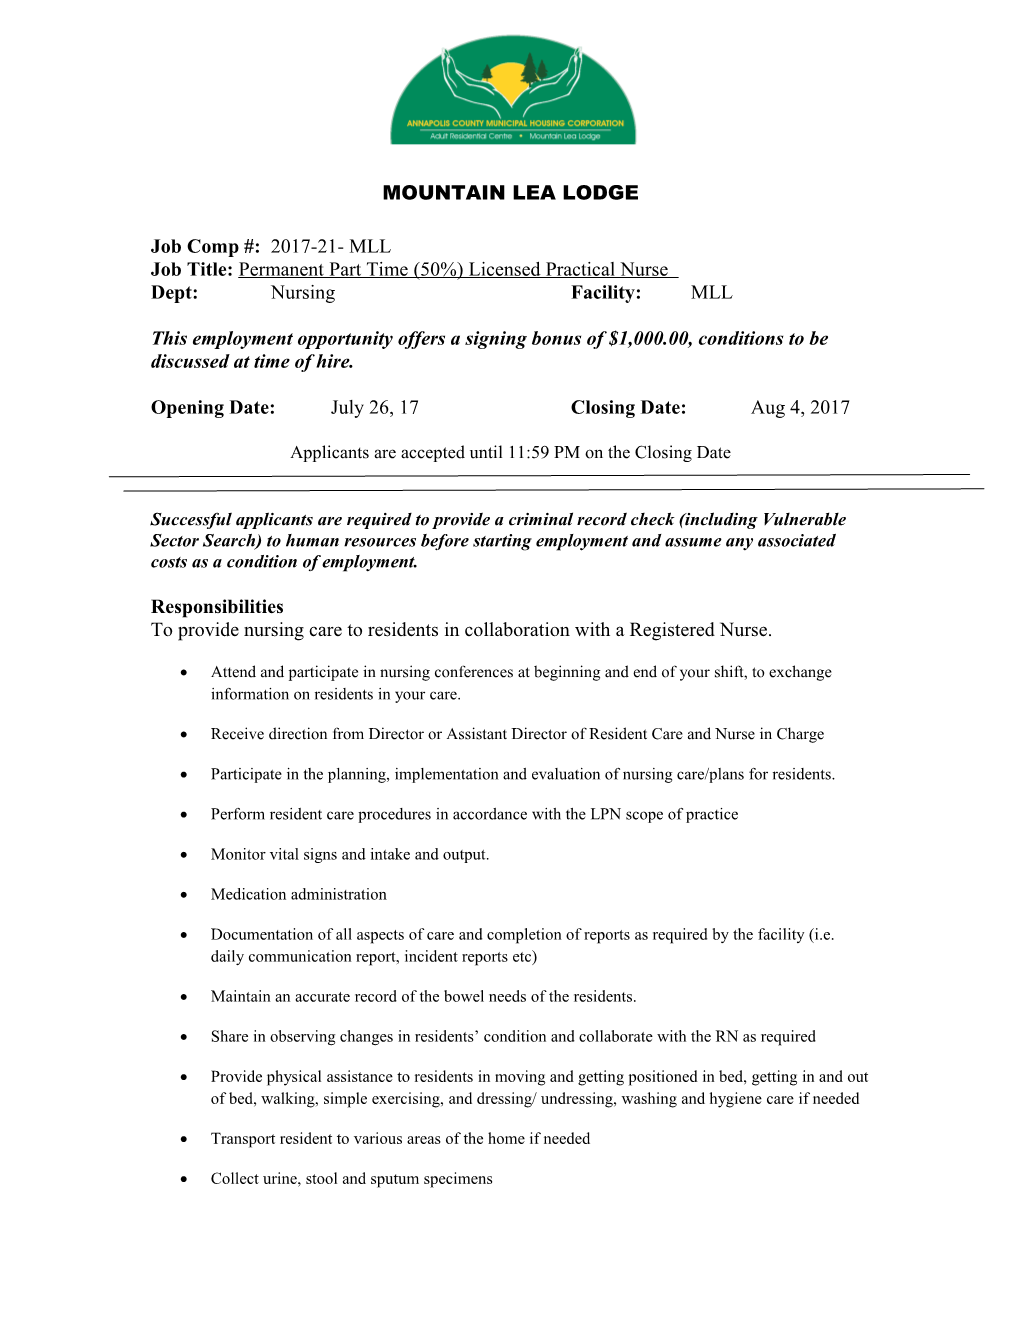 Job Title:Permanent Parttime (50%)Licensed Practical Nurse